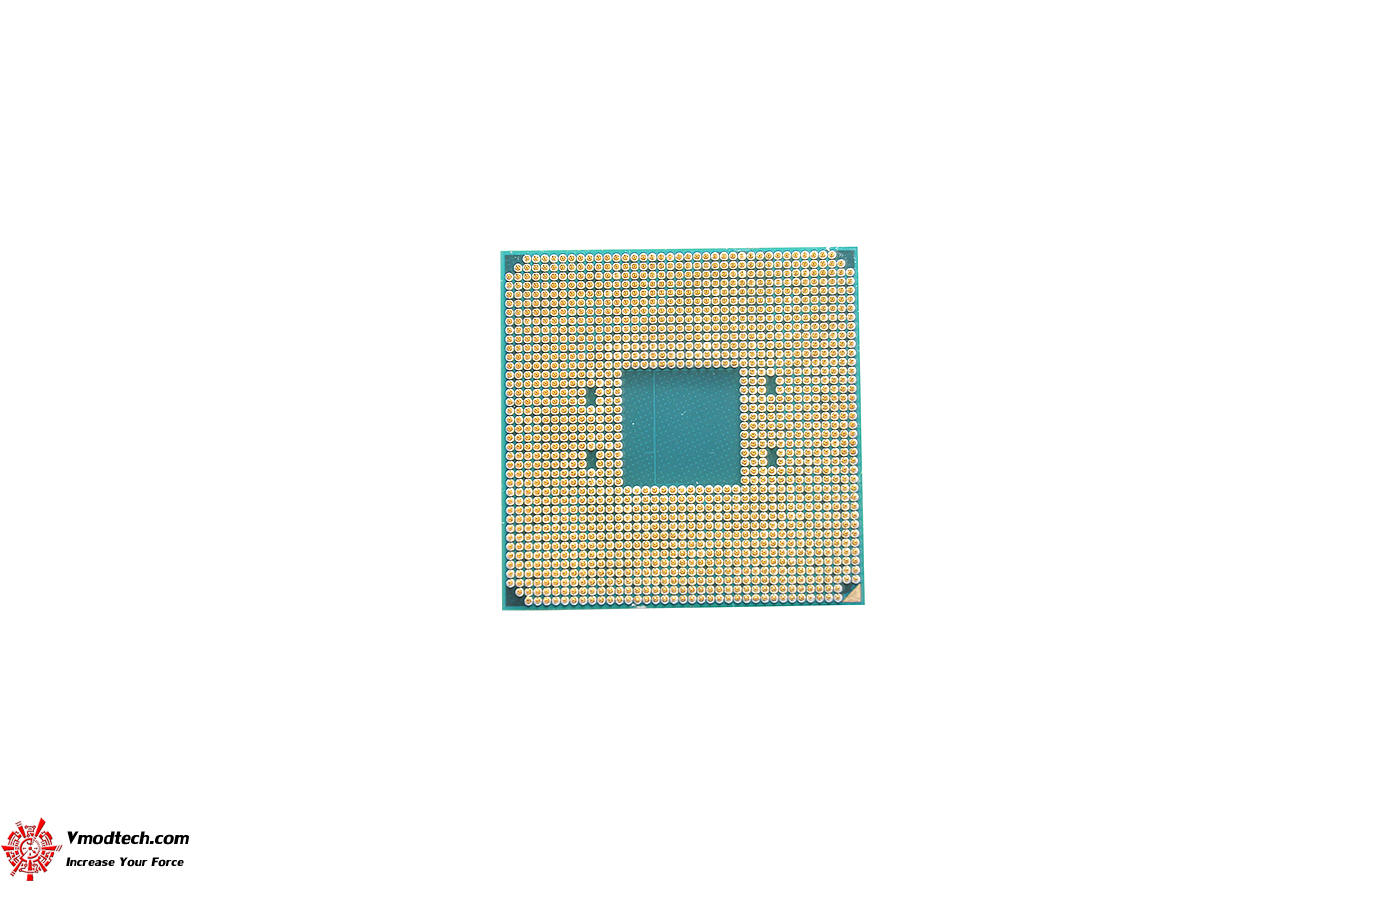 dsc 6569 AMD RYZEN 5 5600 PROCESSOR REVIEW